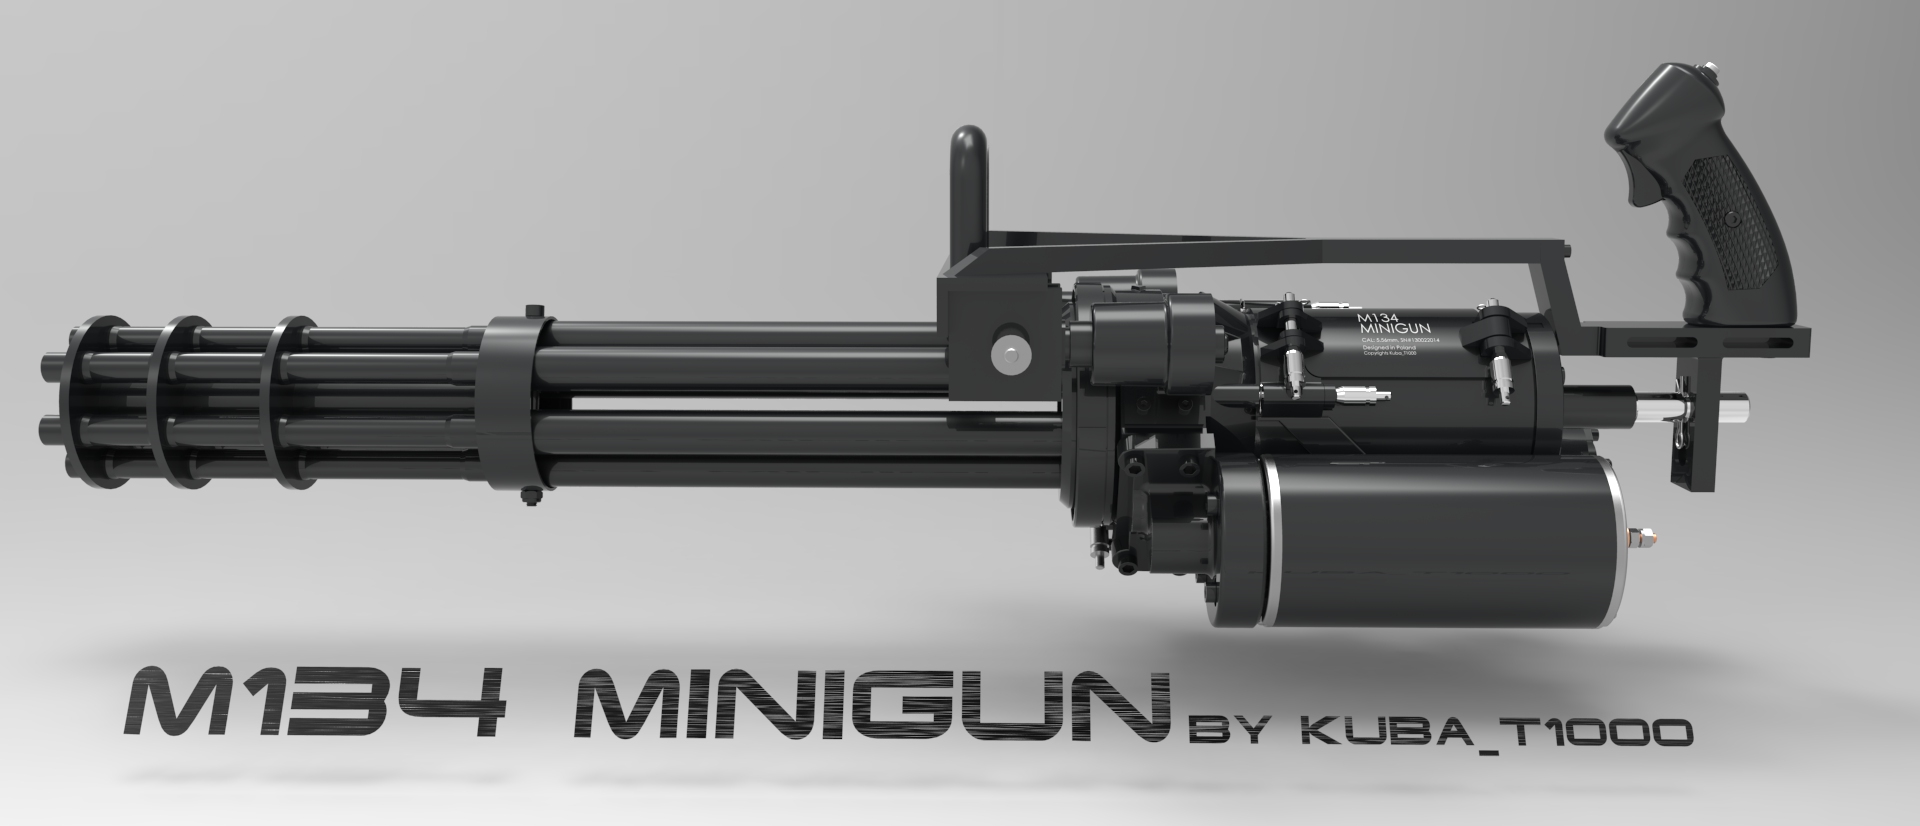 Images of M134 Minigun | 1920x826